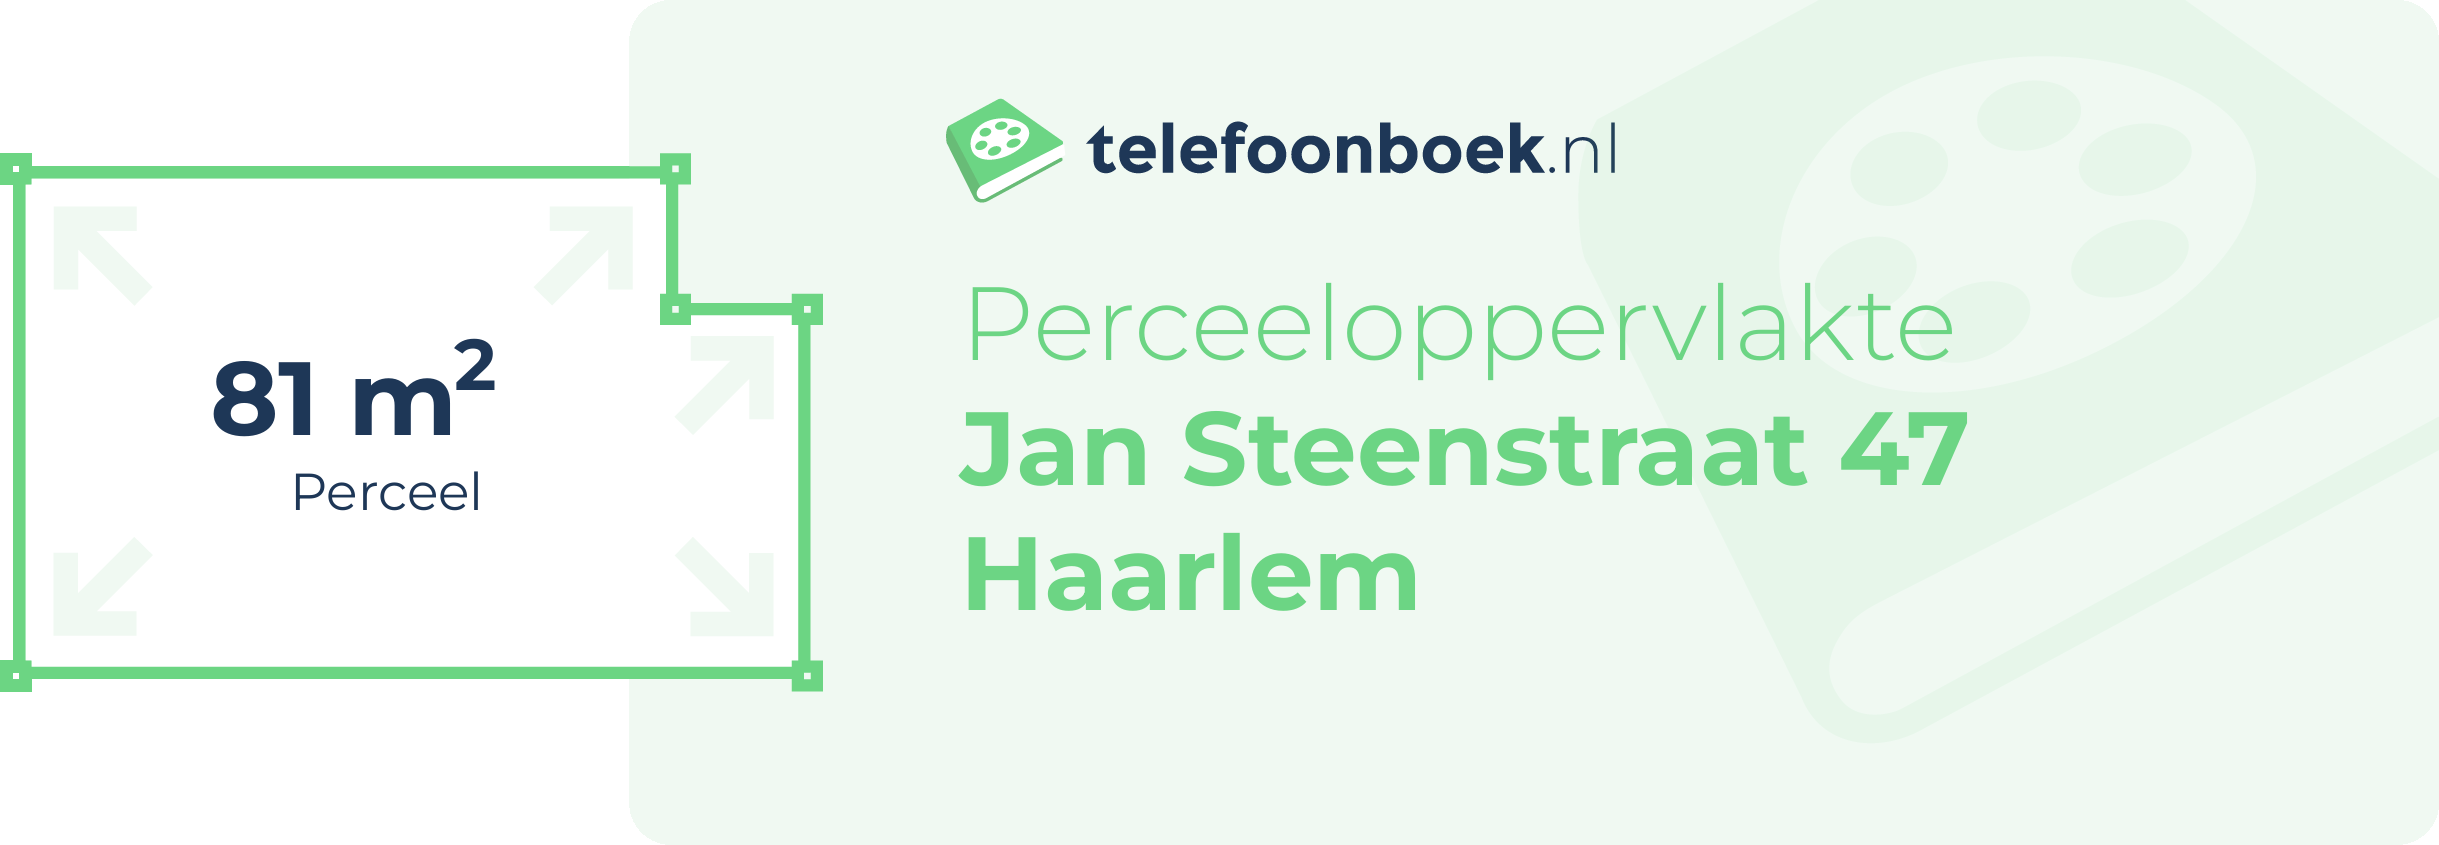 Perceeloppervlakte Jan Steenstraat 47 Haarlem